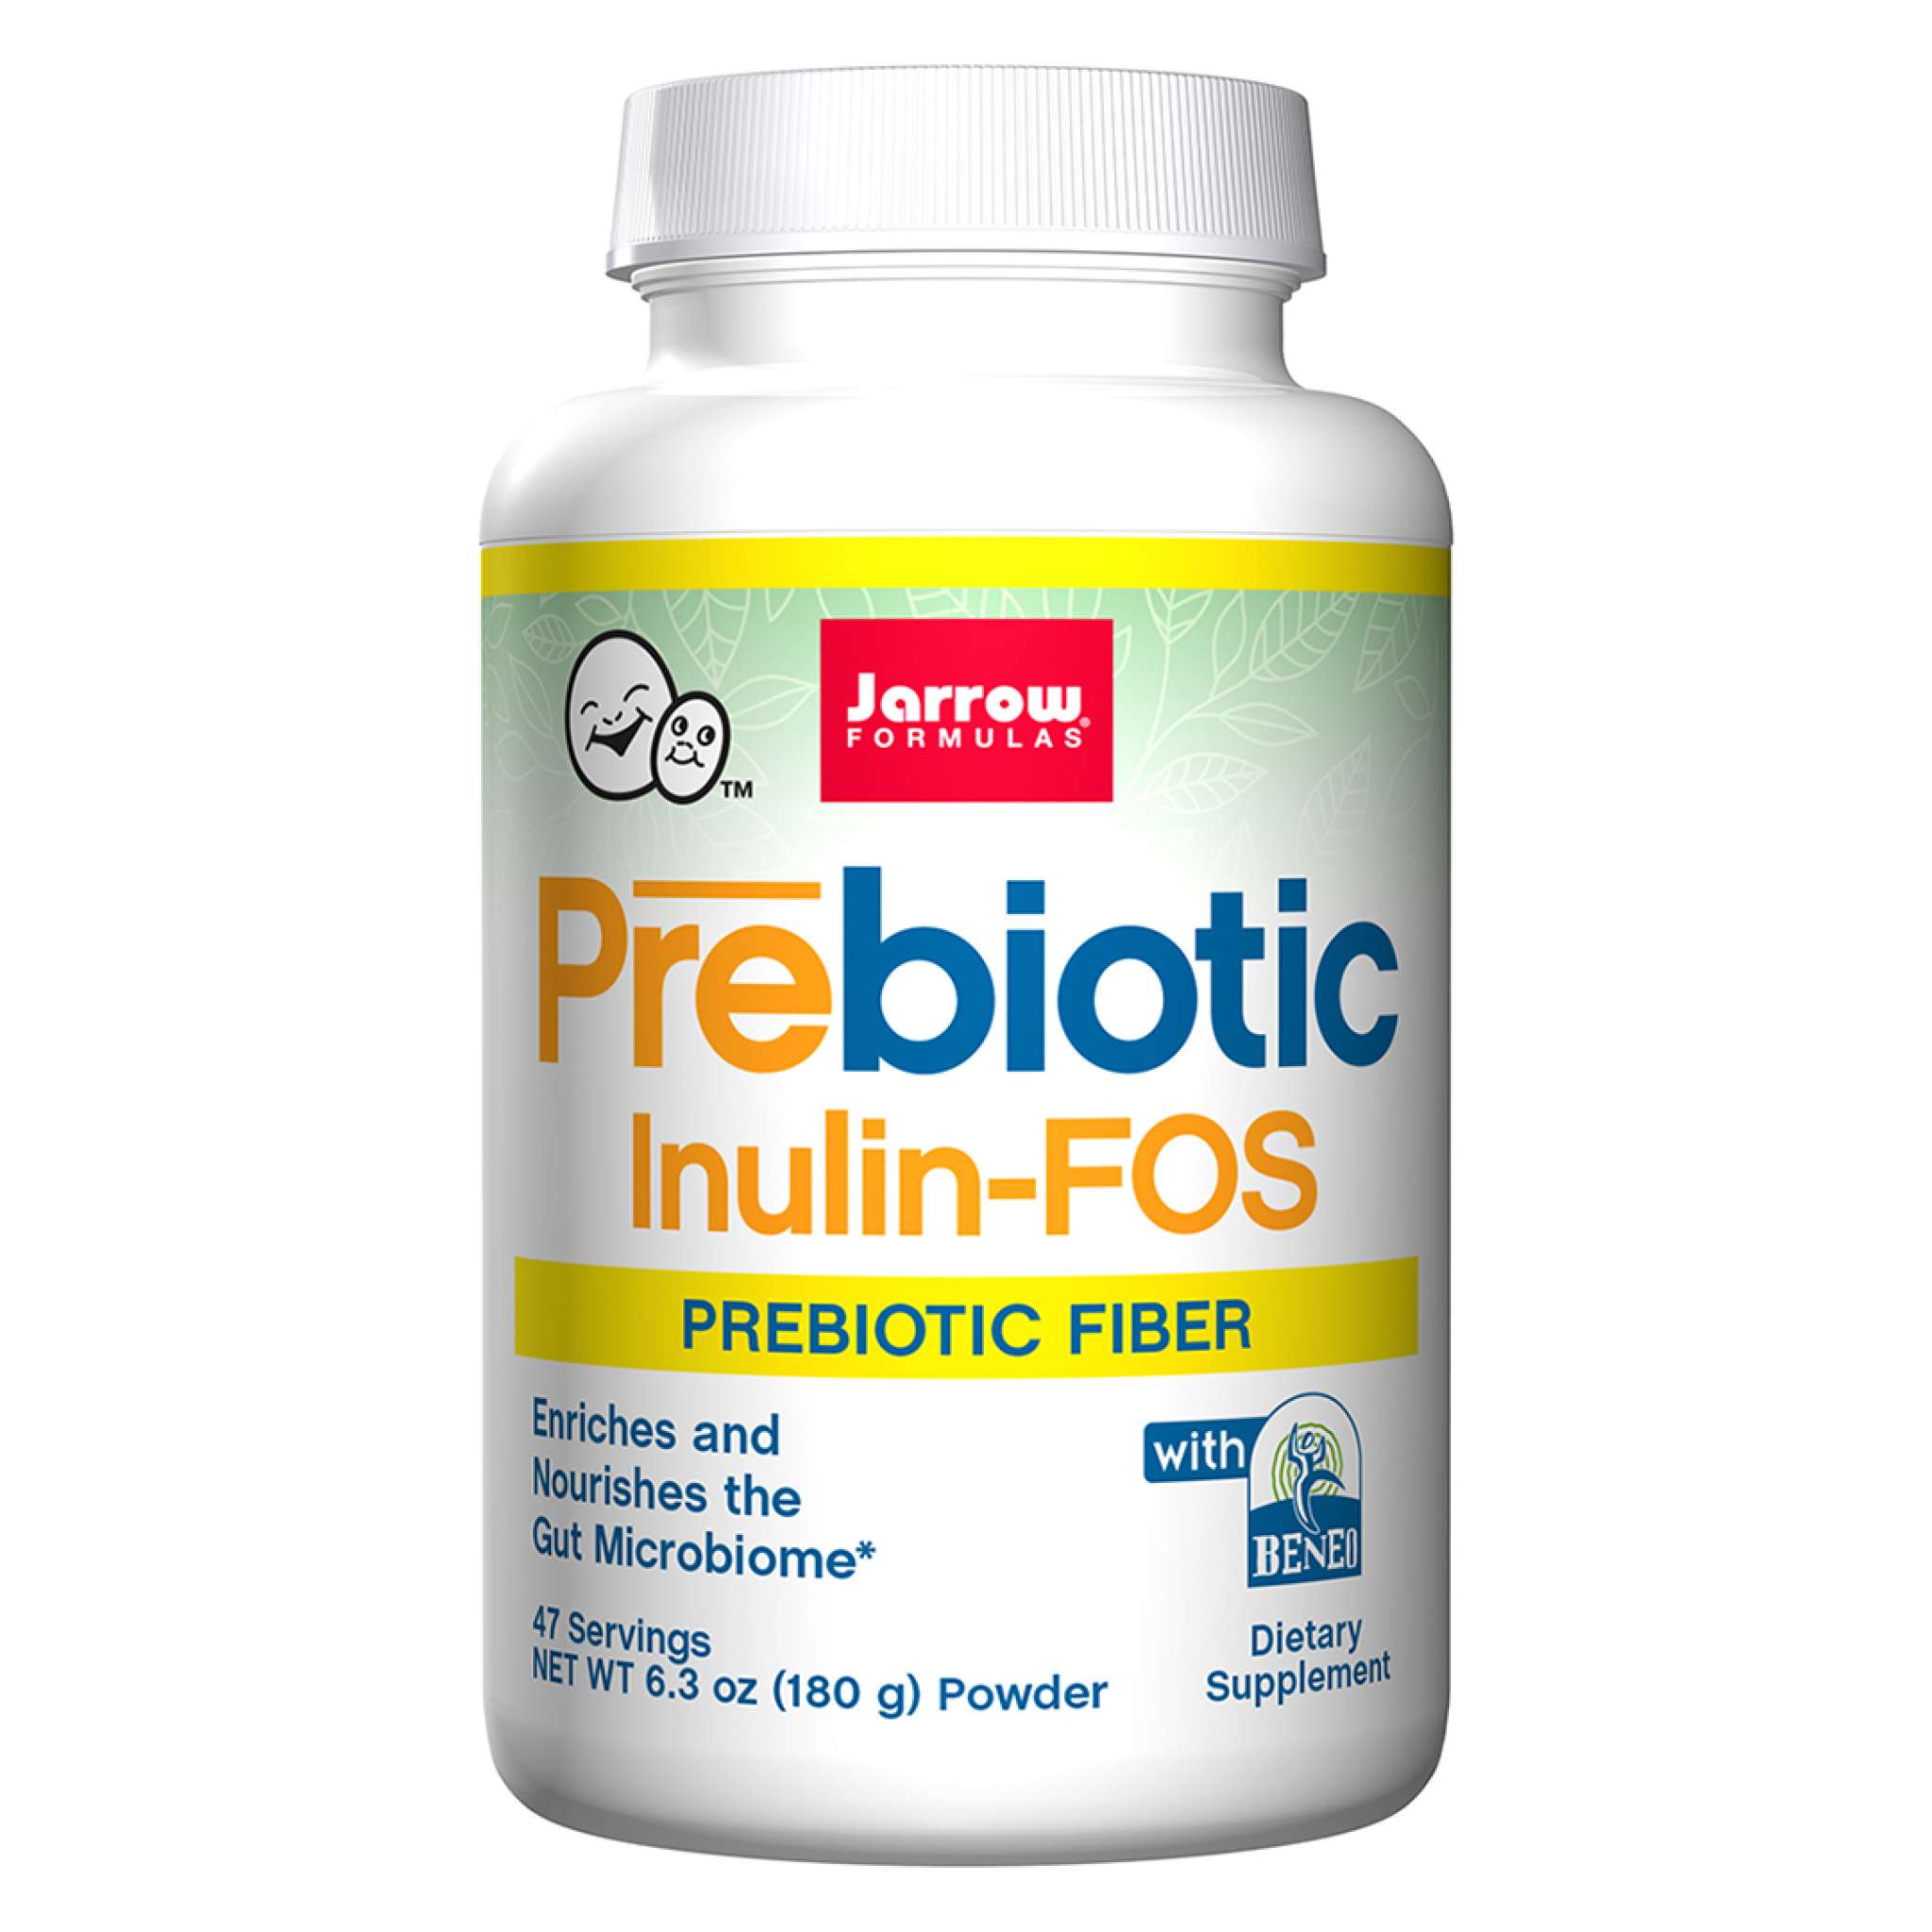 Jarrow Formulas - Prebiotic Inulinfos powder